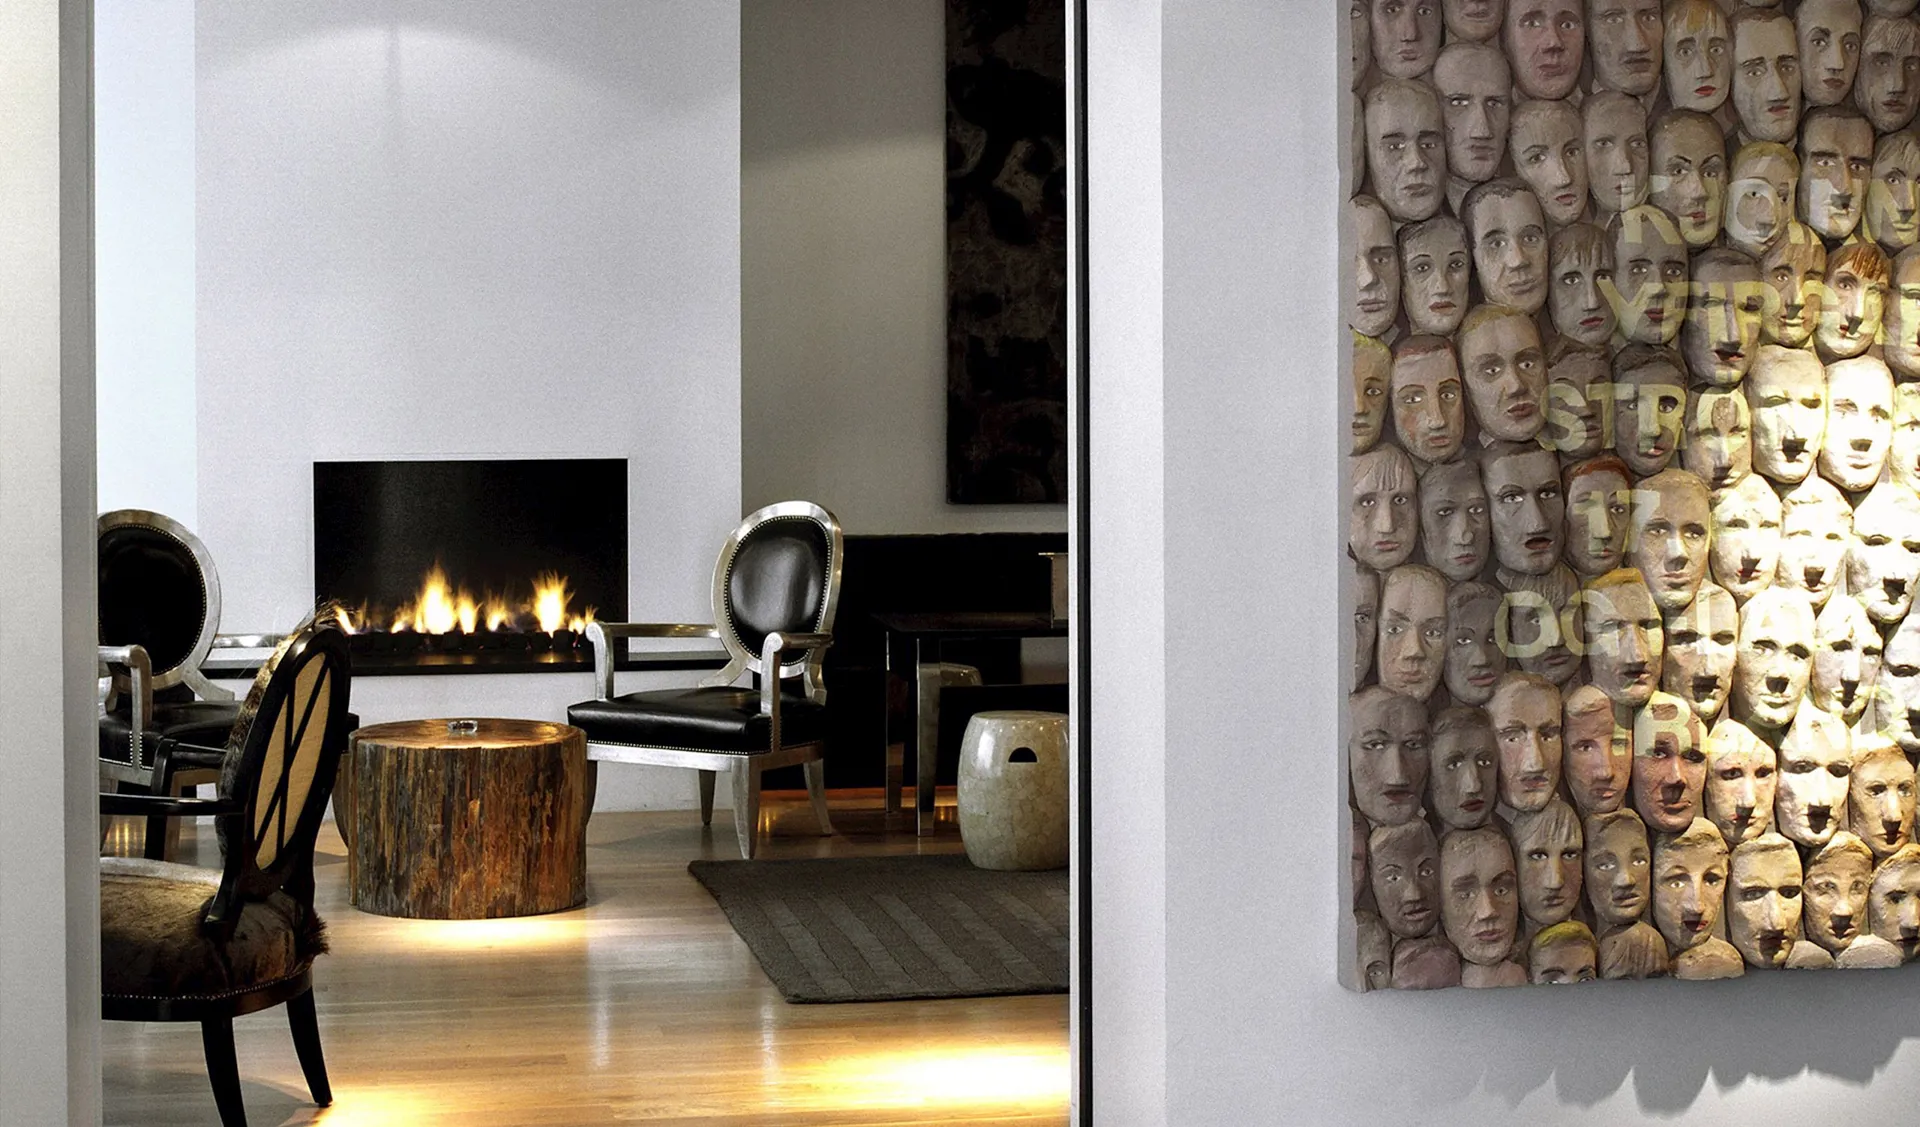 101 Hotel interior design fireplace details in Reykjavik